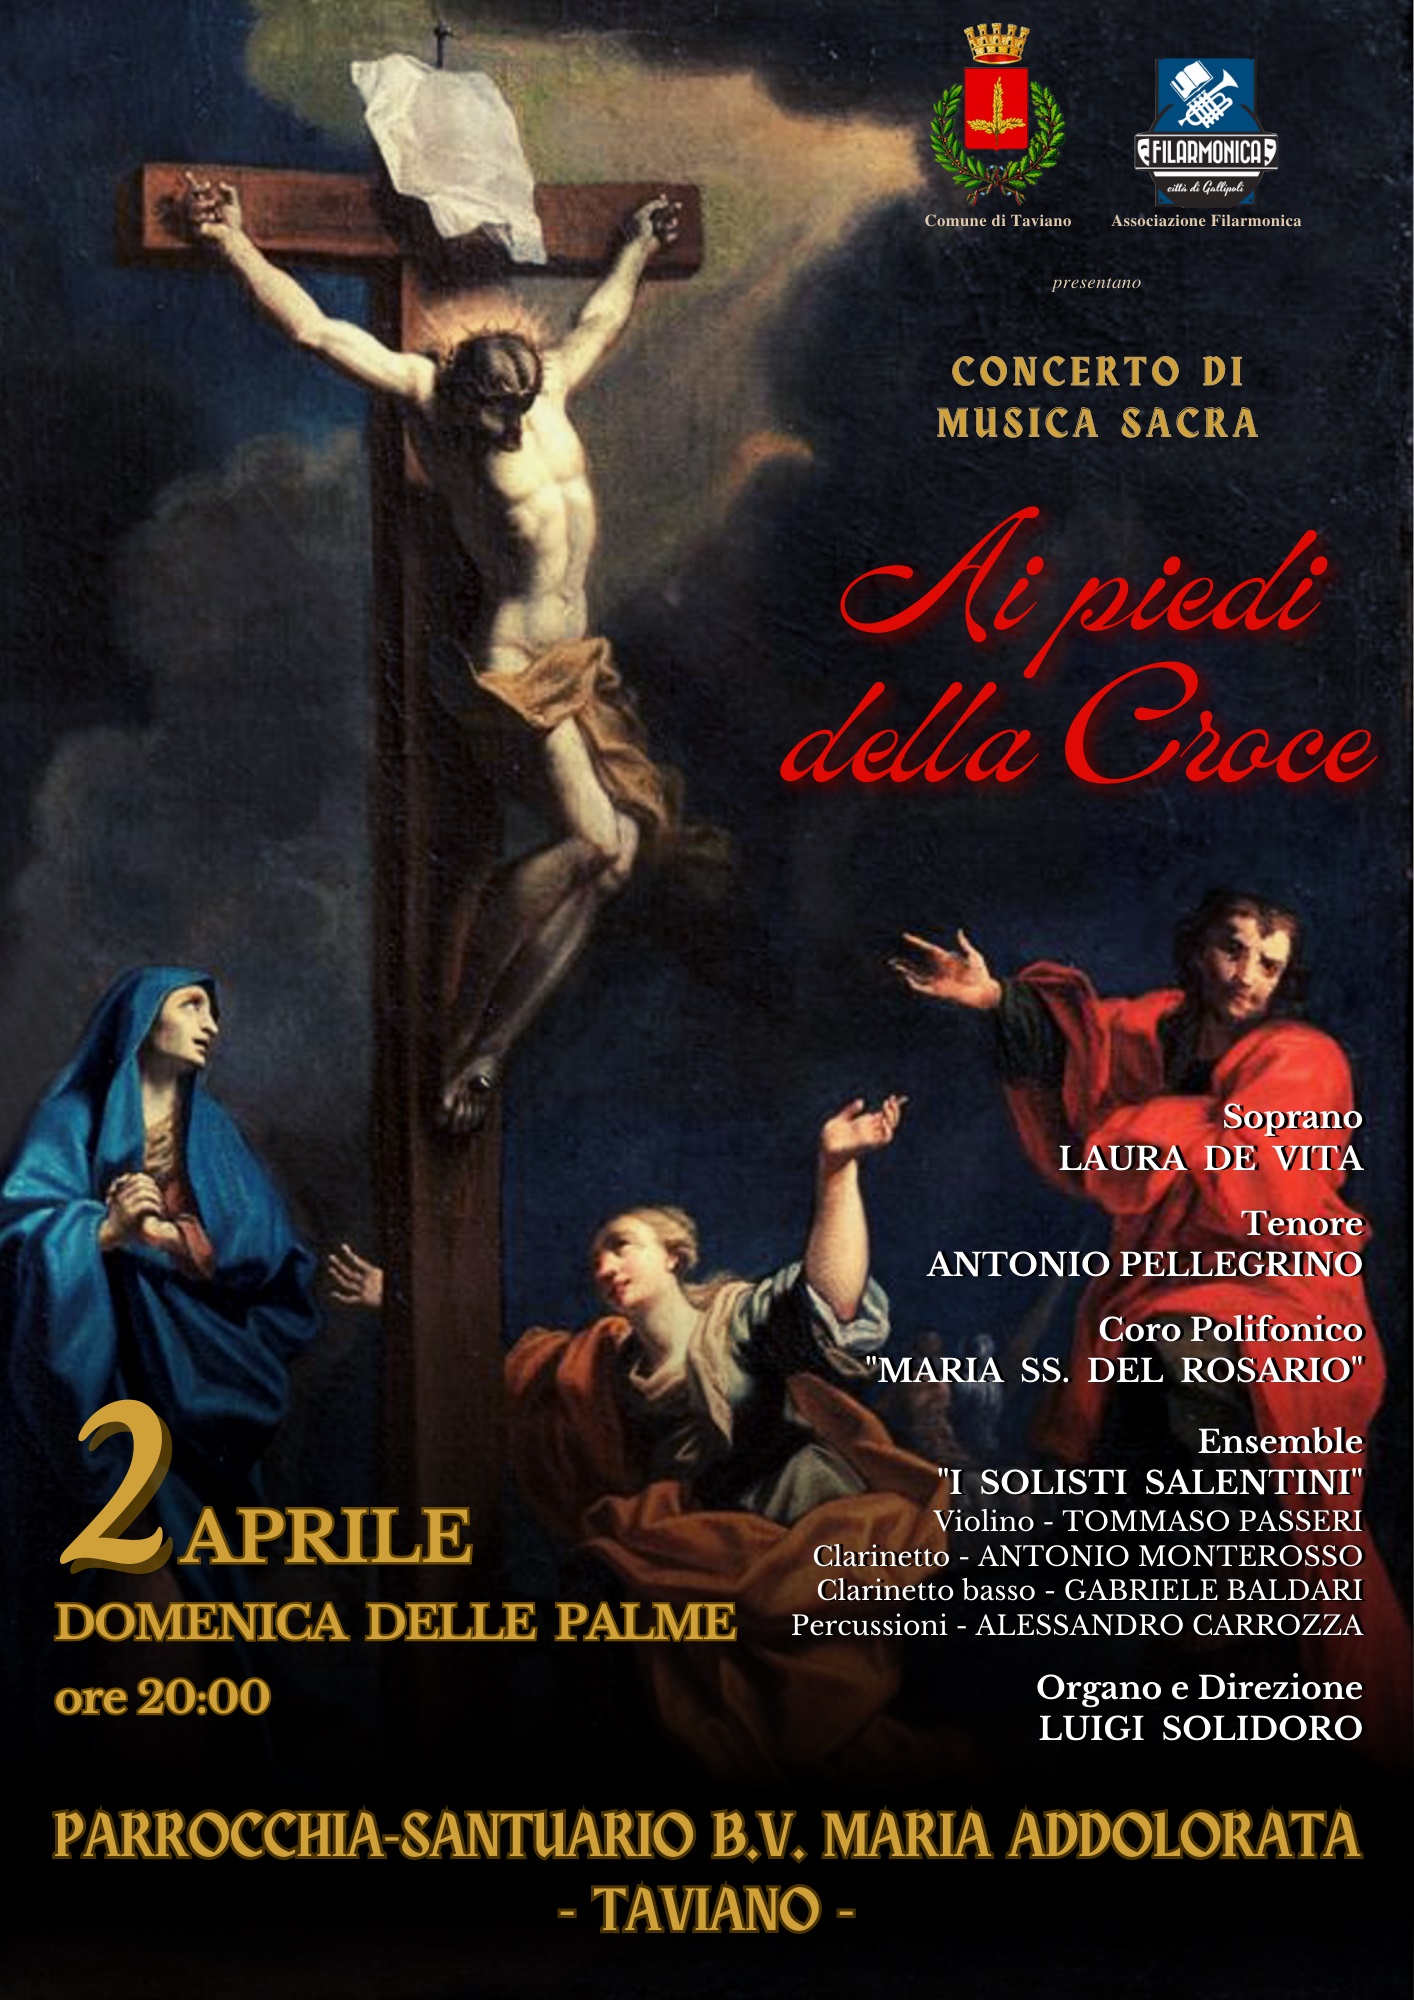 locandina del concerto diretto da Luigi Solidoro la Domenica delle Palme a Taviano